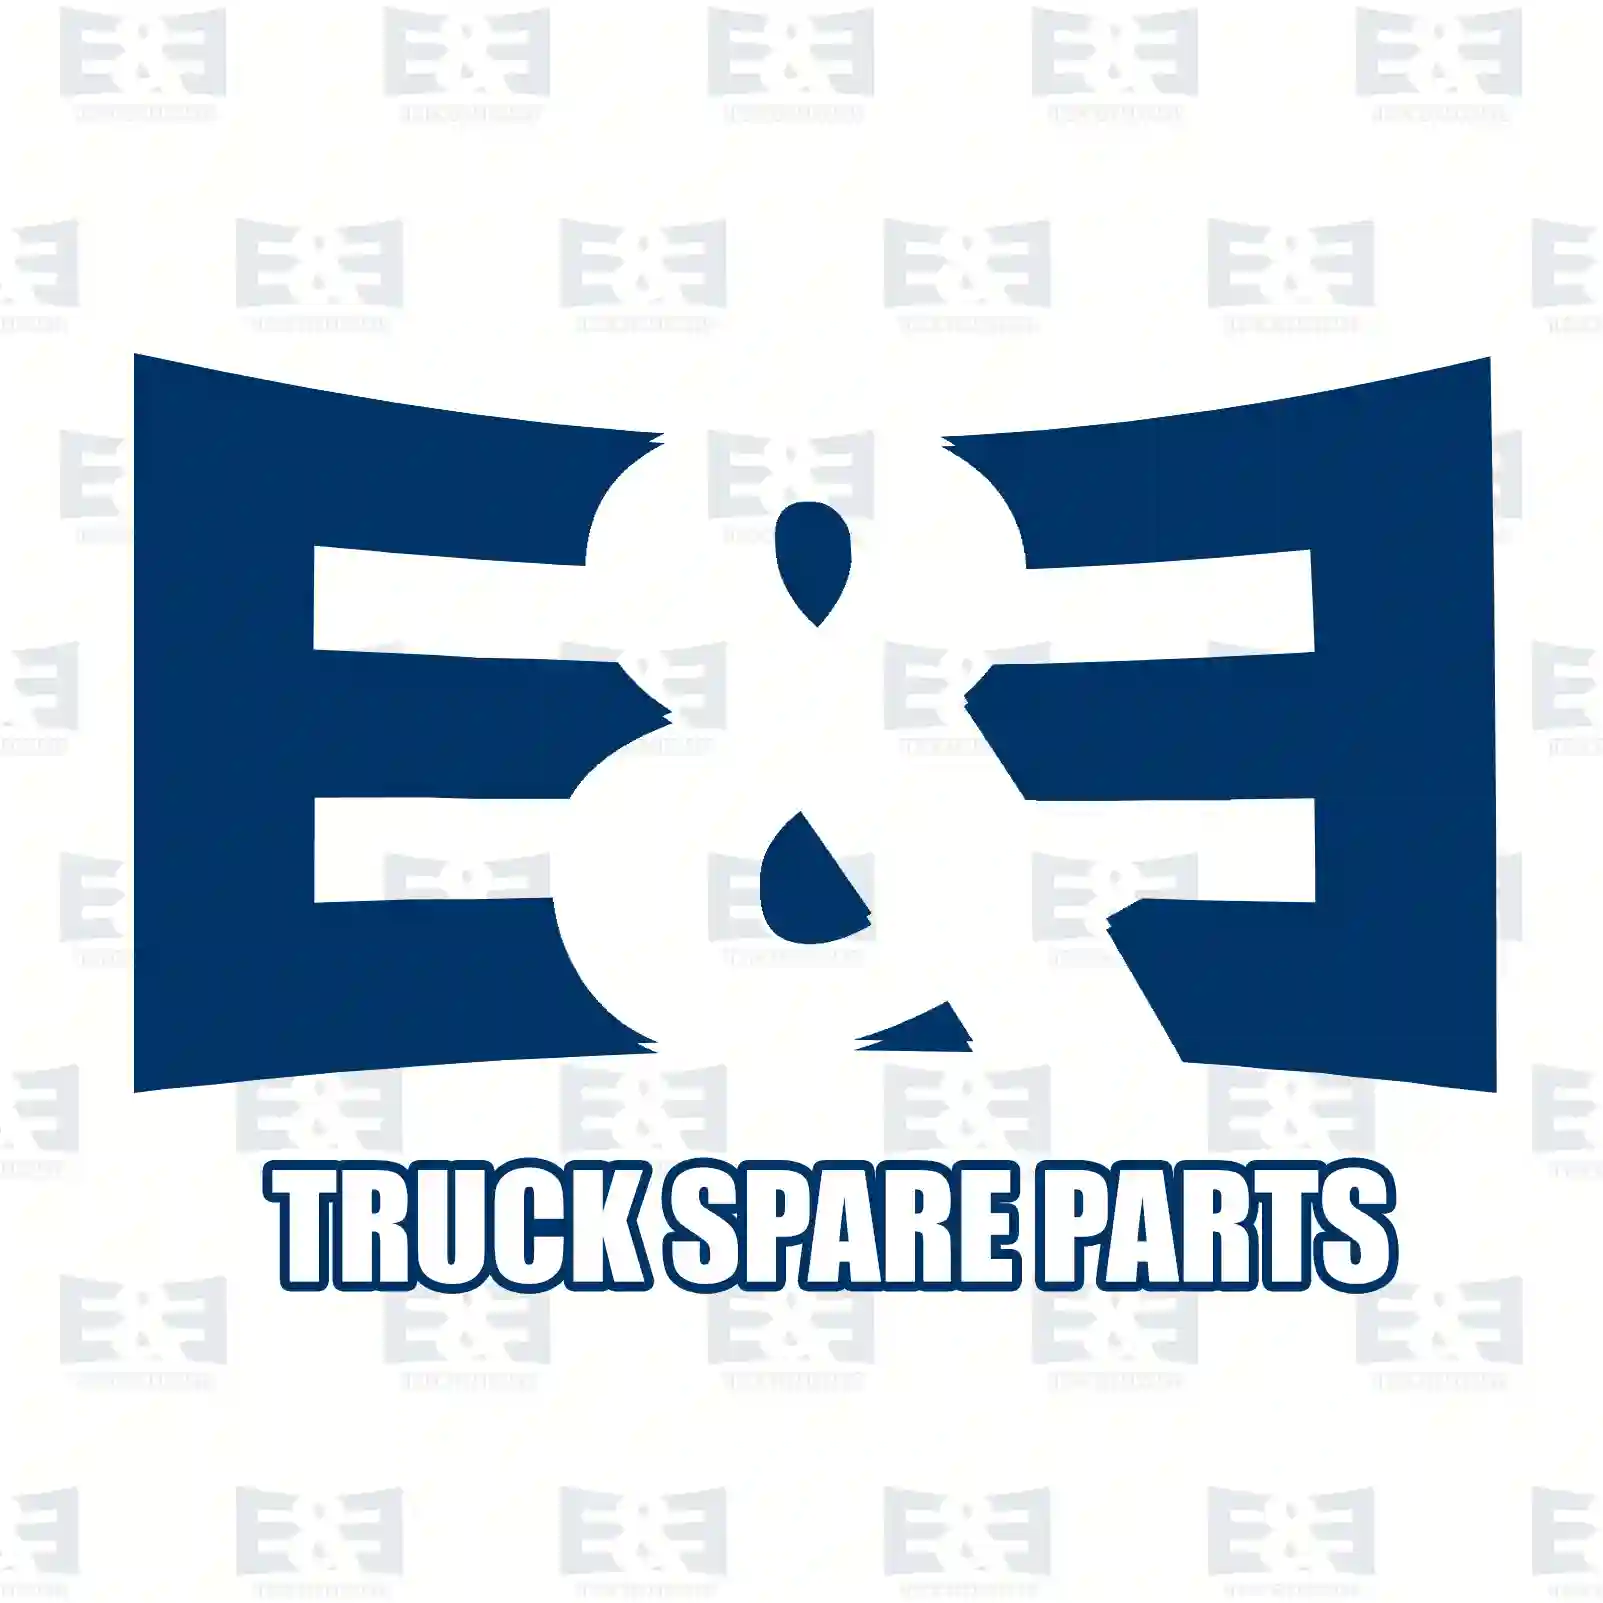 Radiator Radiator, EE No 2E2203930 ,  oem no:1326966, 1326966A, 1326966R, 1364465, 1364465A, 1364465R, 1617340, 1617340A, 1617340R, 1617341, 1617341A, 1617341R, 1858772, 1858774 E&E Truck Spare Parts | Truck Spare Parts, Auotomotive Spare Parts